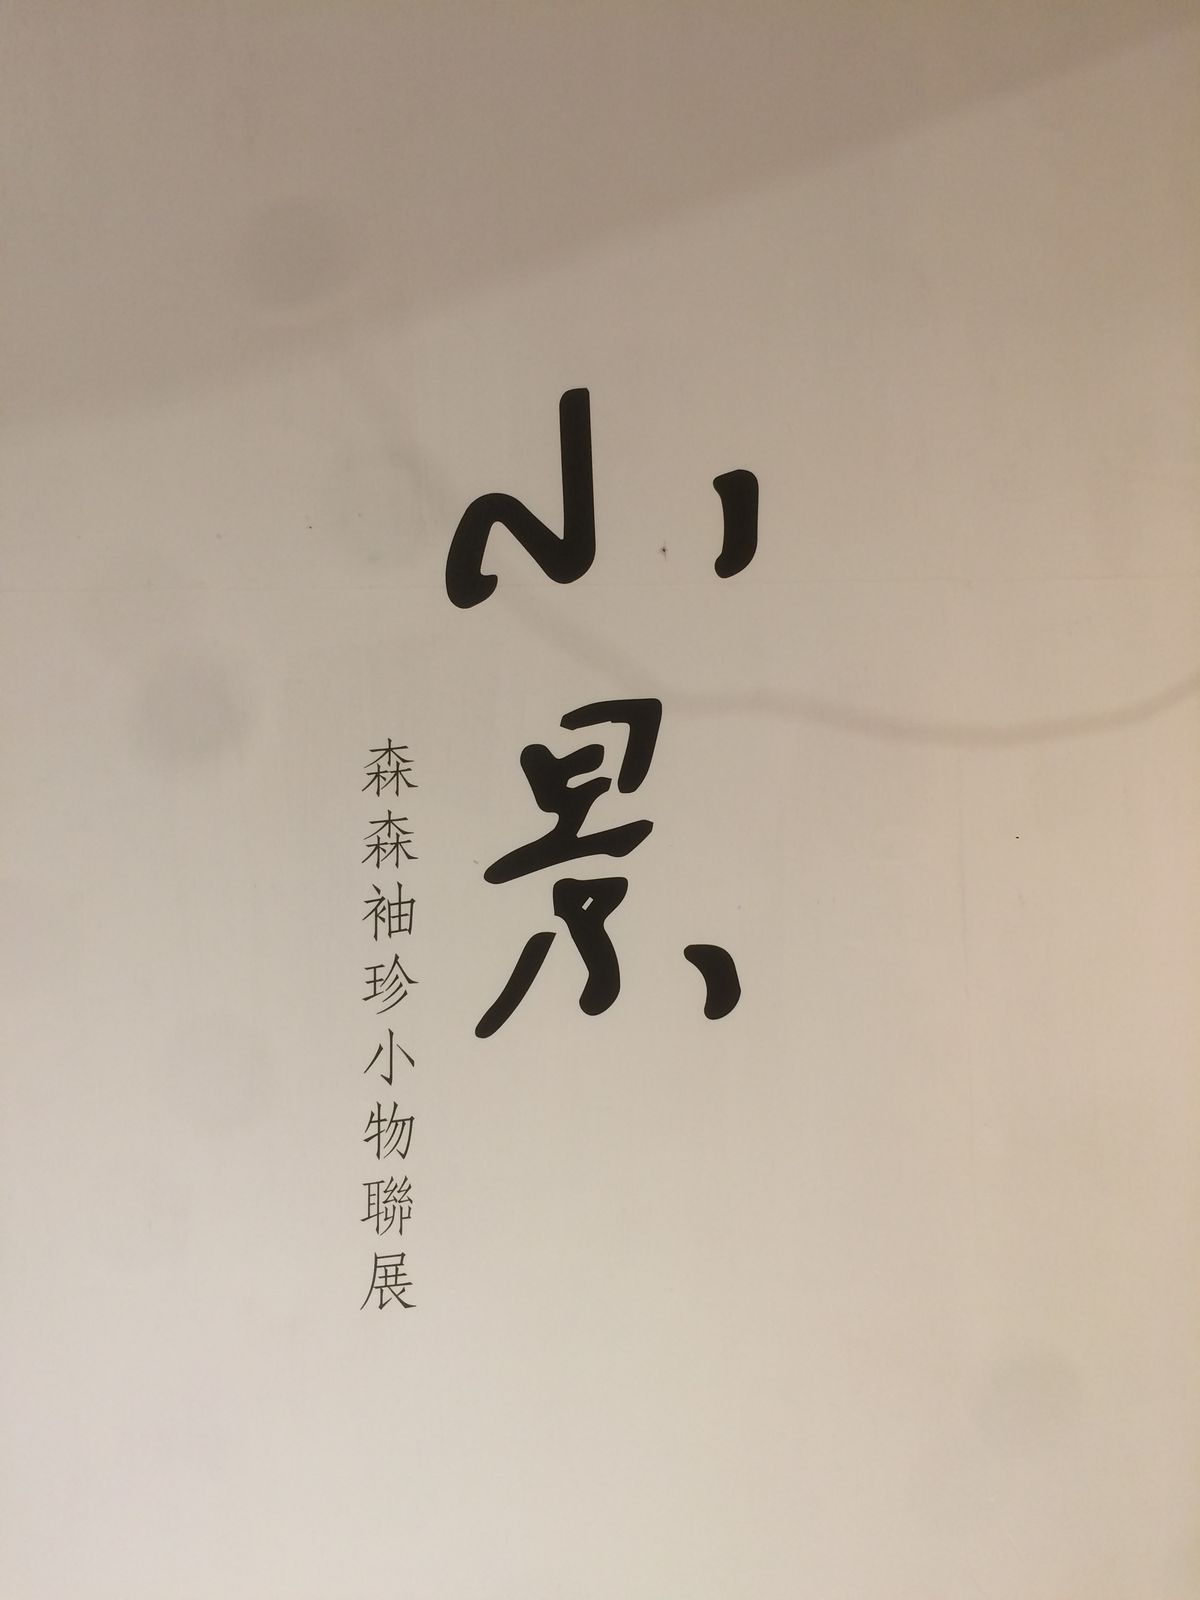 小景— 森森袖珍小物聯展 （2019-11-15 Written by HSUSHAOYI）